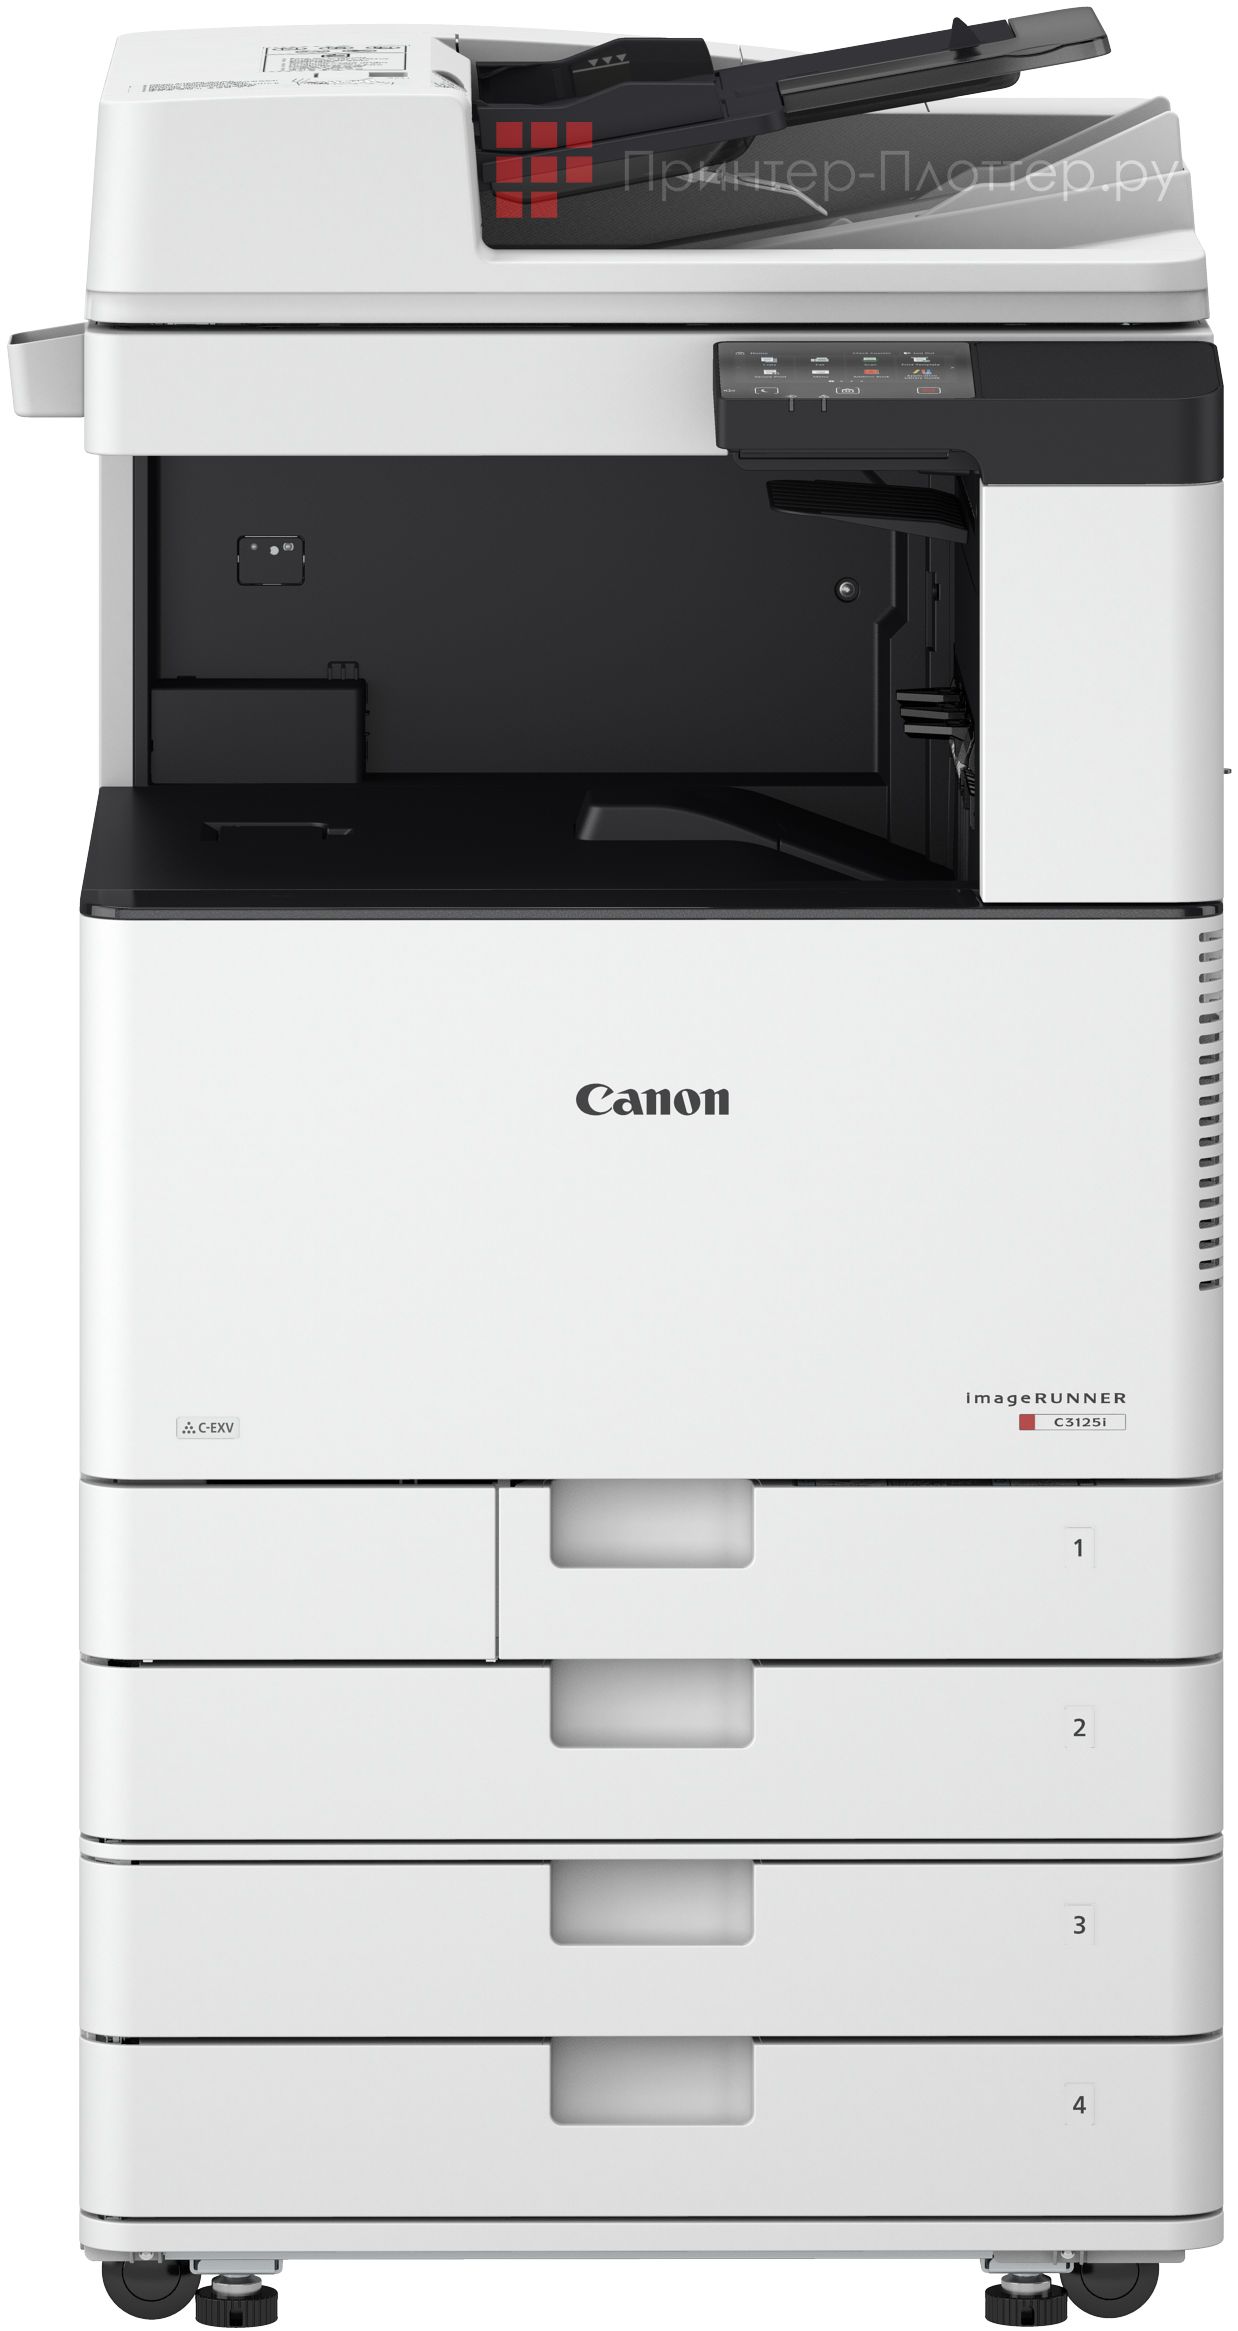 Canon imageRUNNER C3125i